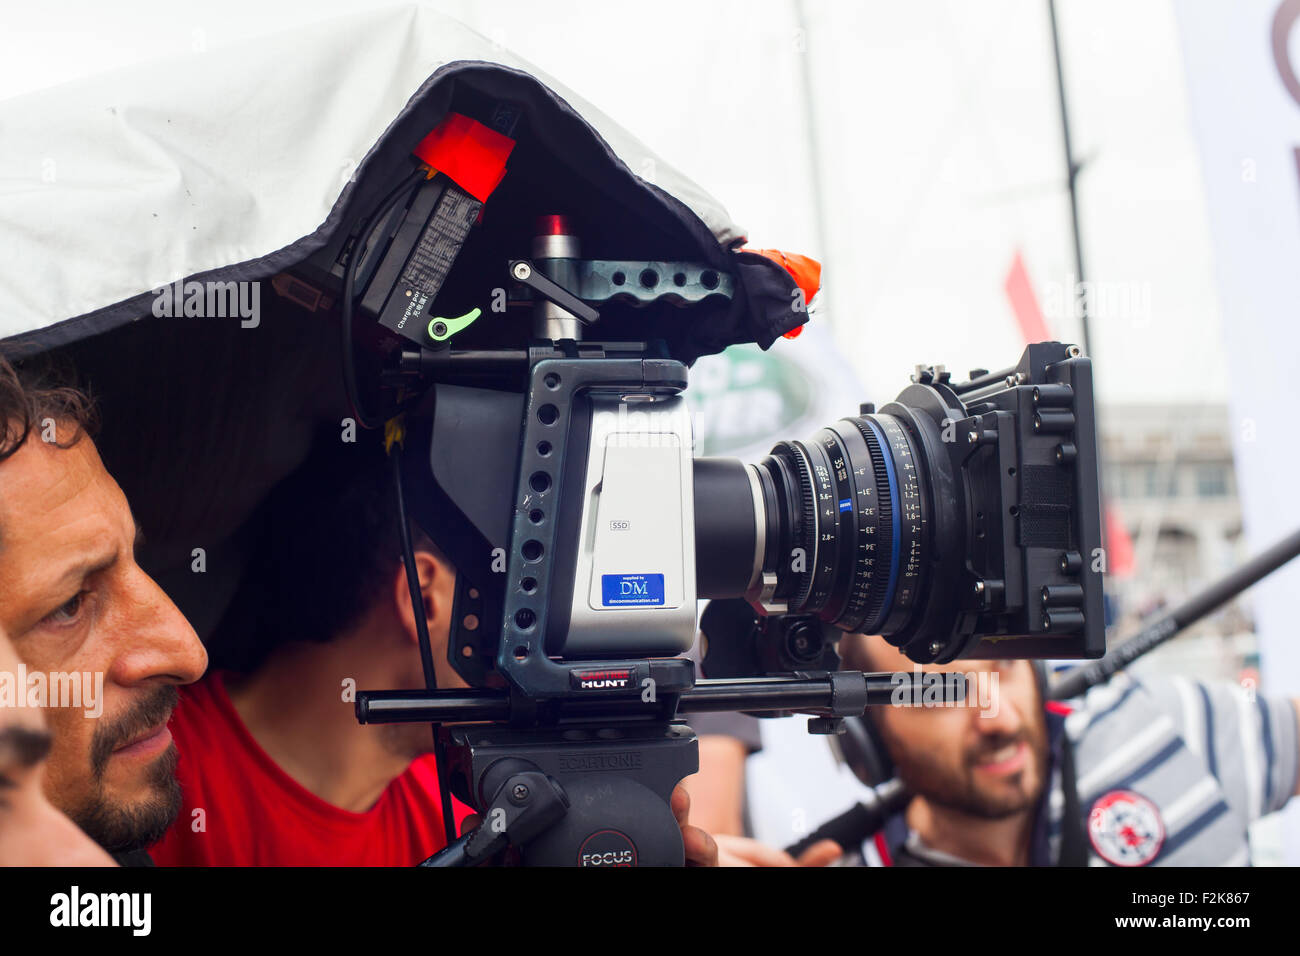 TRIESTE, Italie - Octobre 12 : Caméraman en action lors de la production de court-métrage le 12 octobre 2014 Banque D'Images